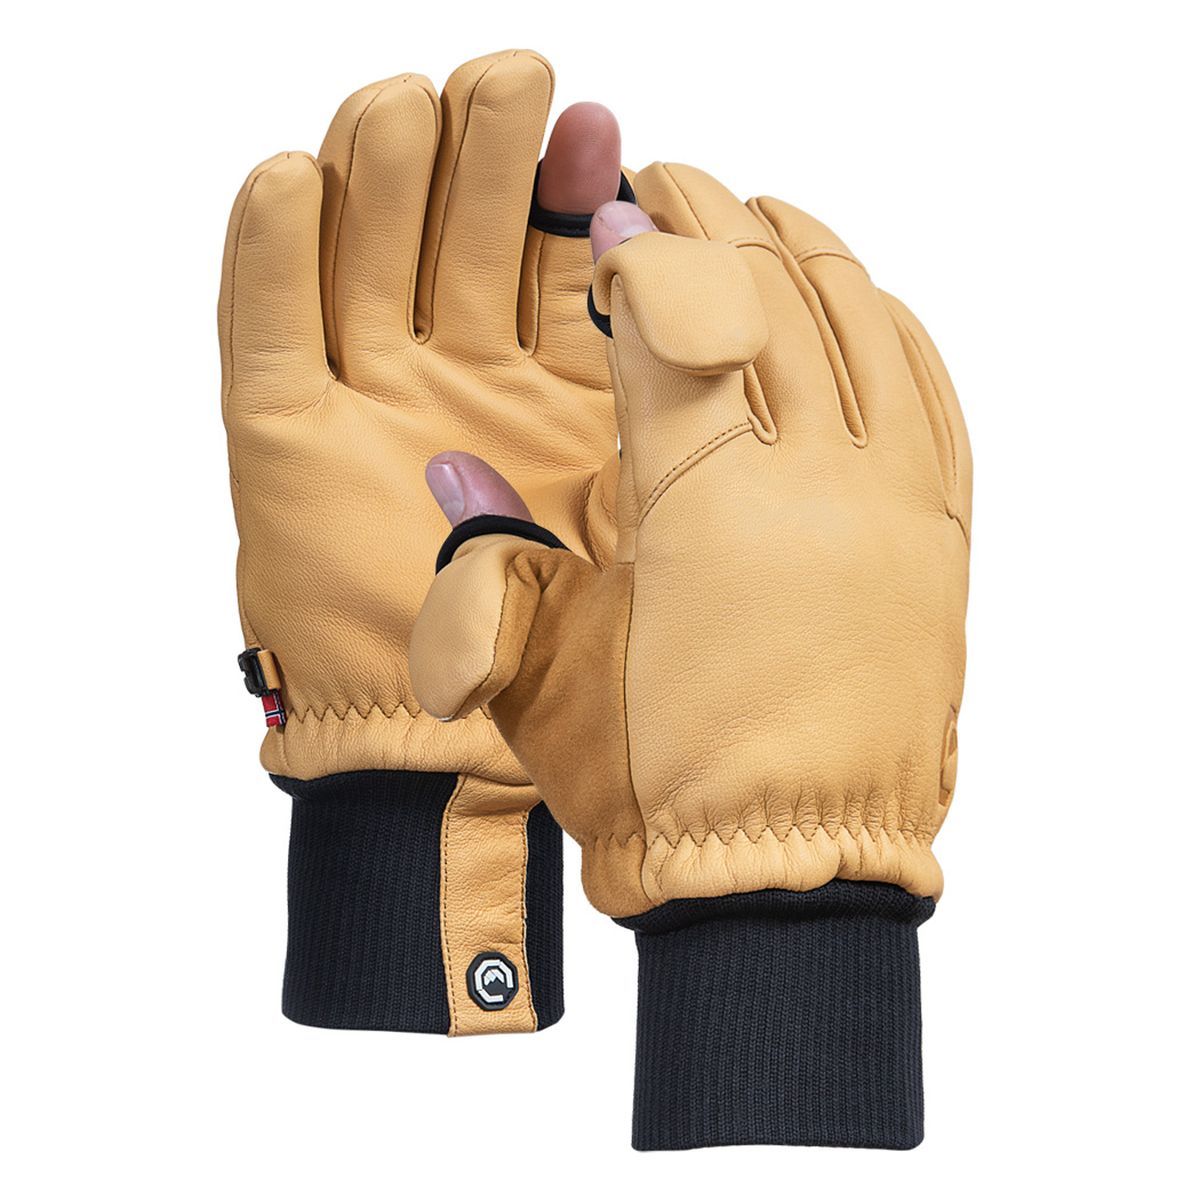 Vallerret Hatchet Leather Glove Natural, Leder-Fotohandschuhe M - Hellbraun